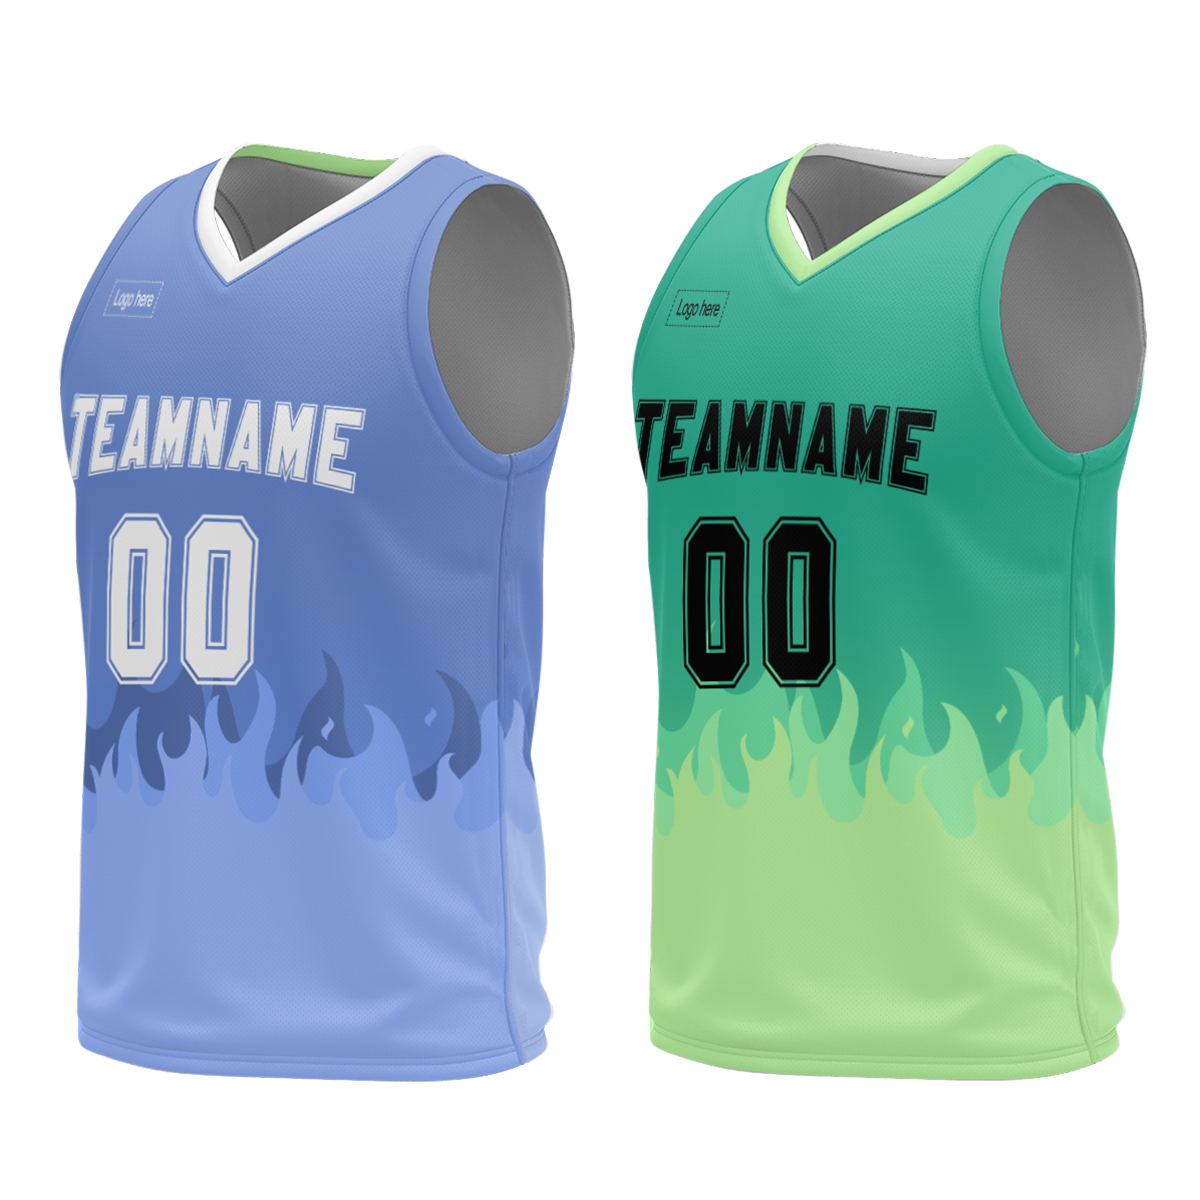 digital-printing-custom-sports-suits-men-newest-best-basketball-jerseys-shirts-tops-sportswear-at-cj-pod-5